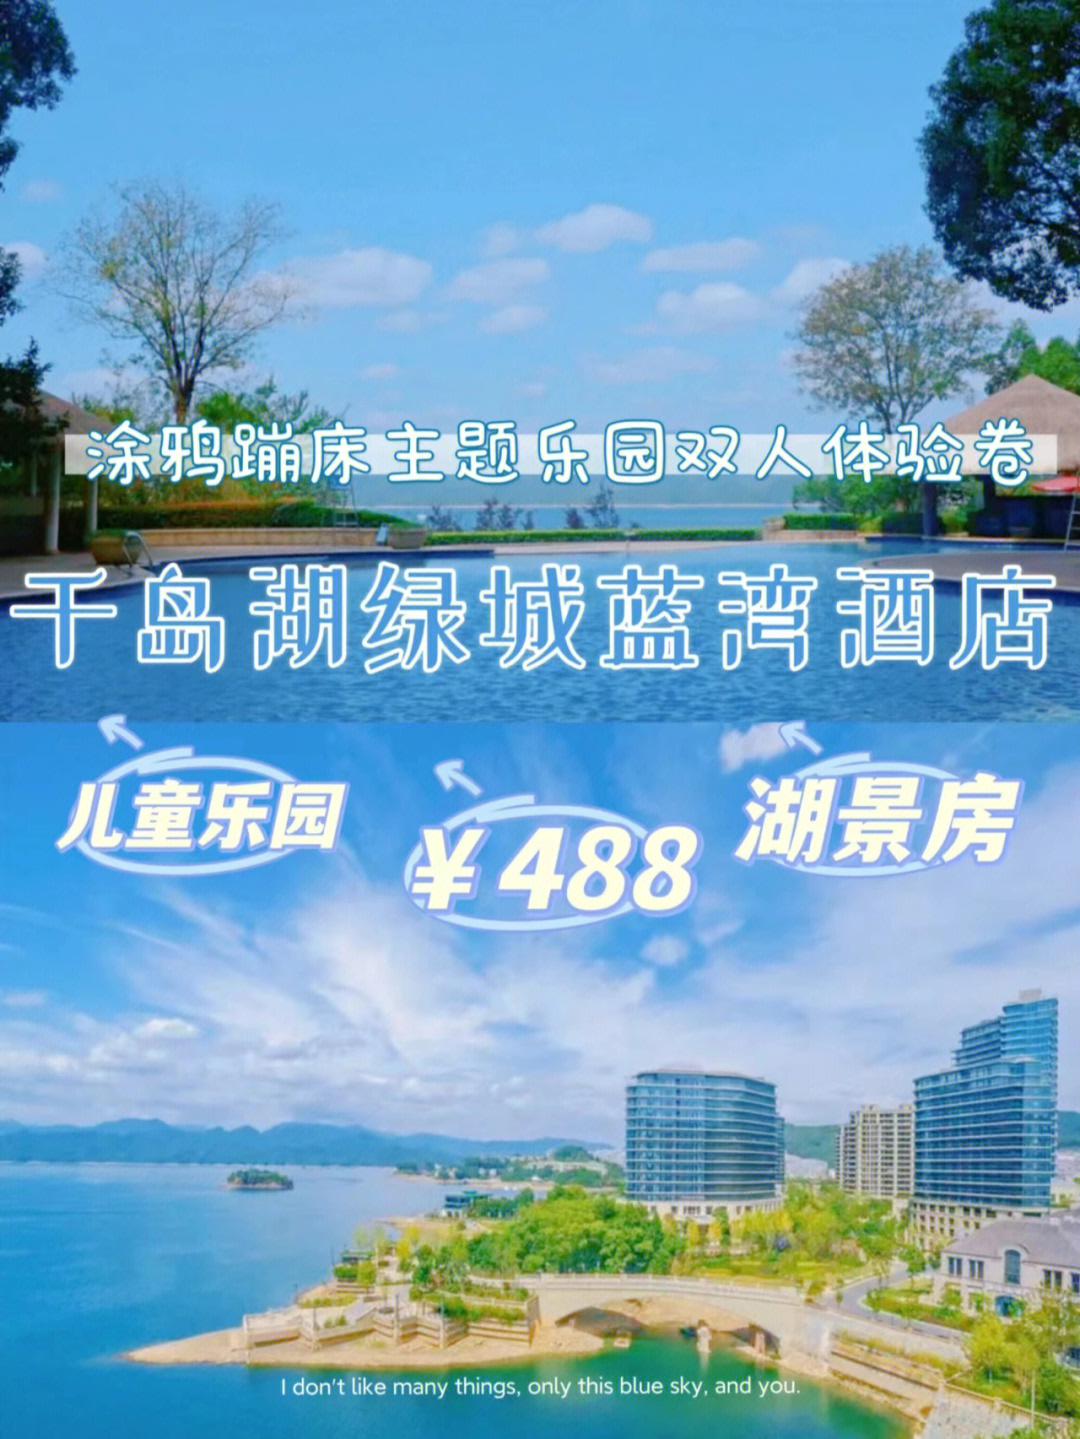 杭州周末度假千岛湖绿城蓝湾酒店